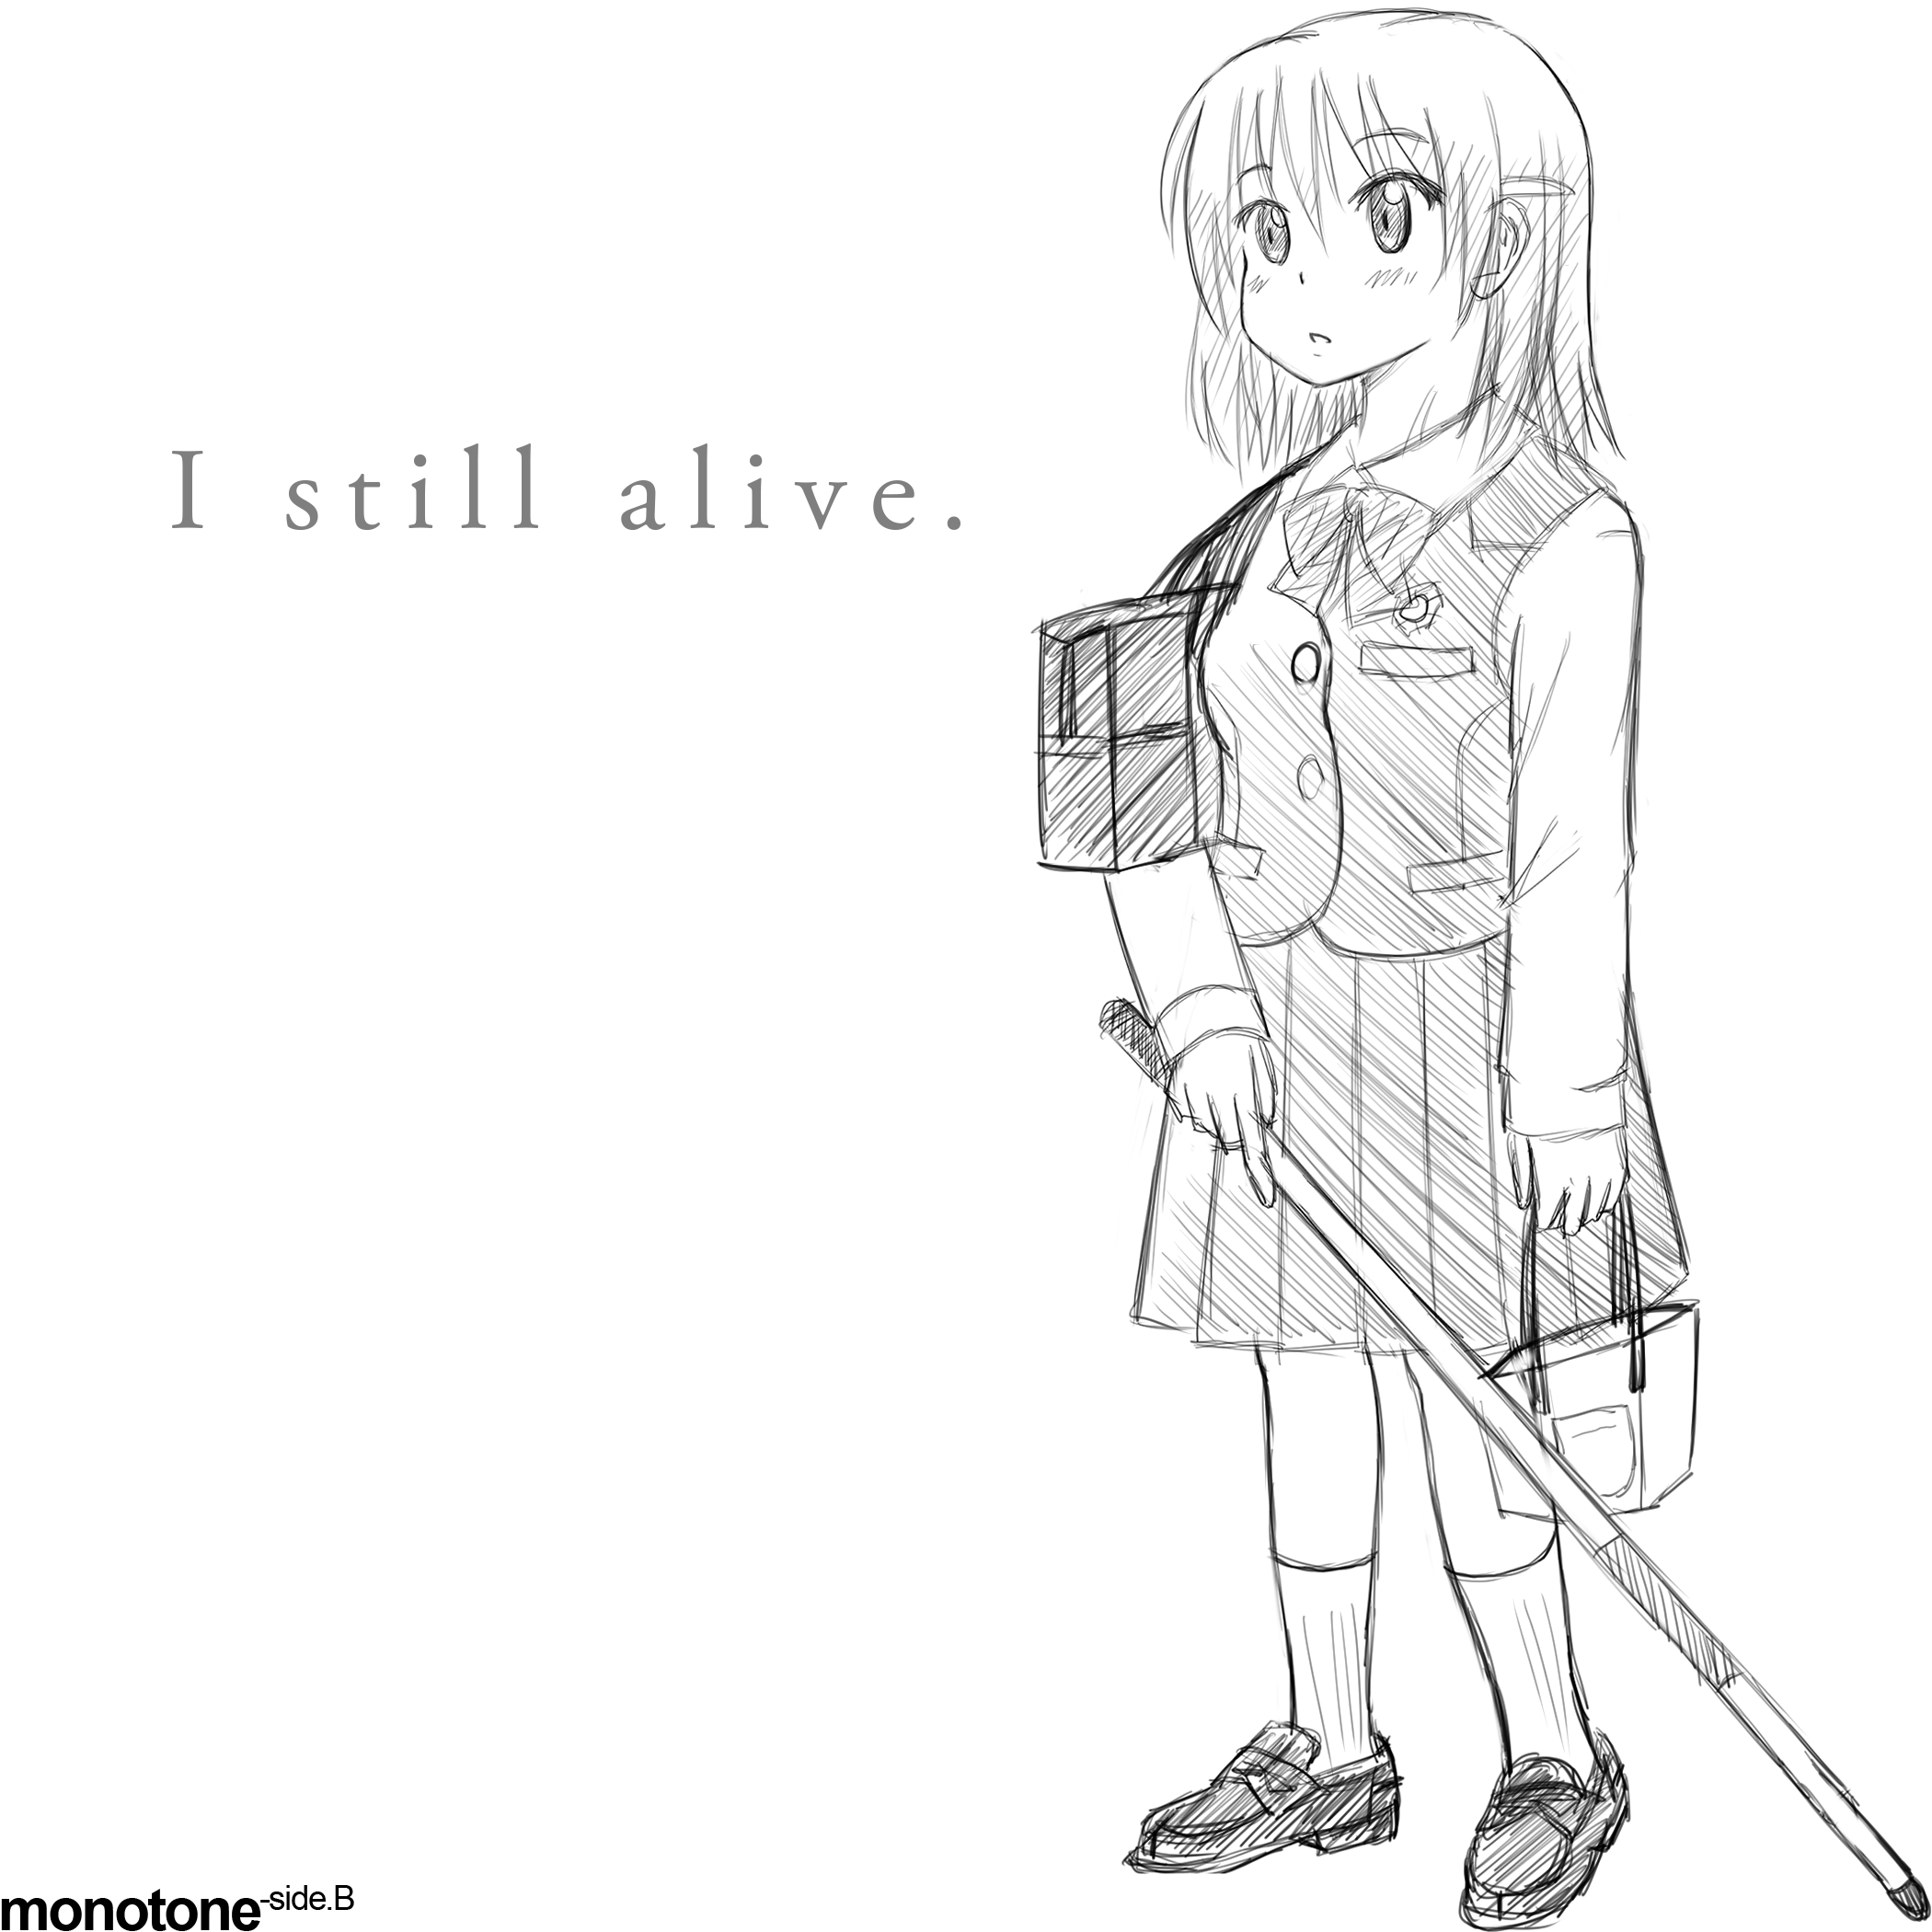 I still alive.